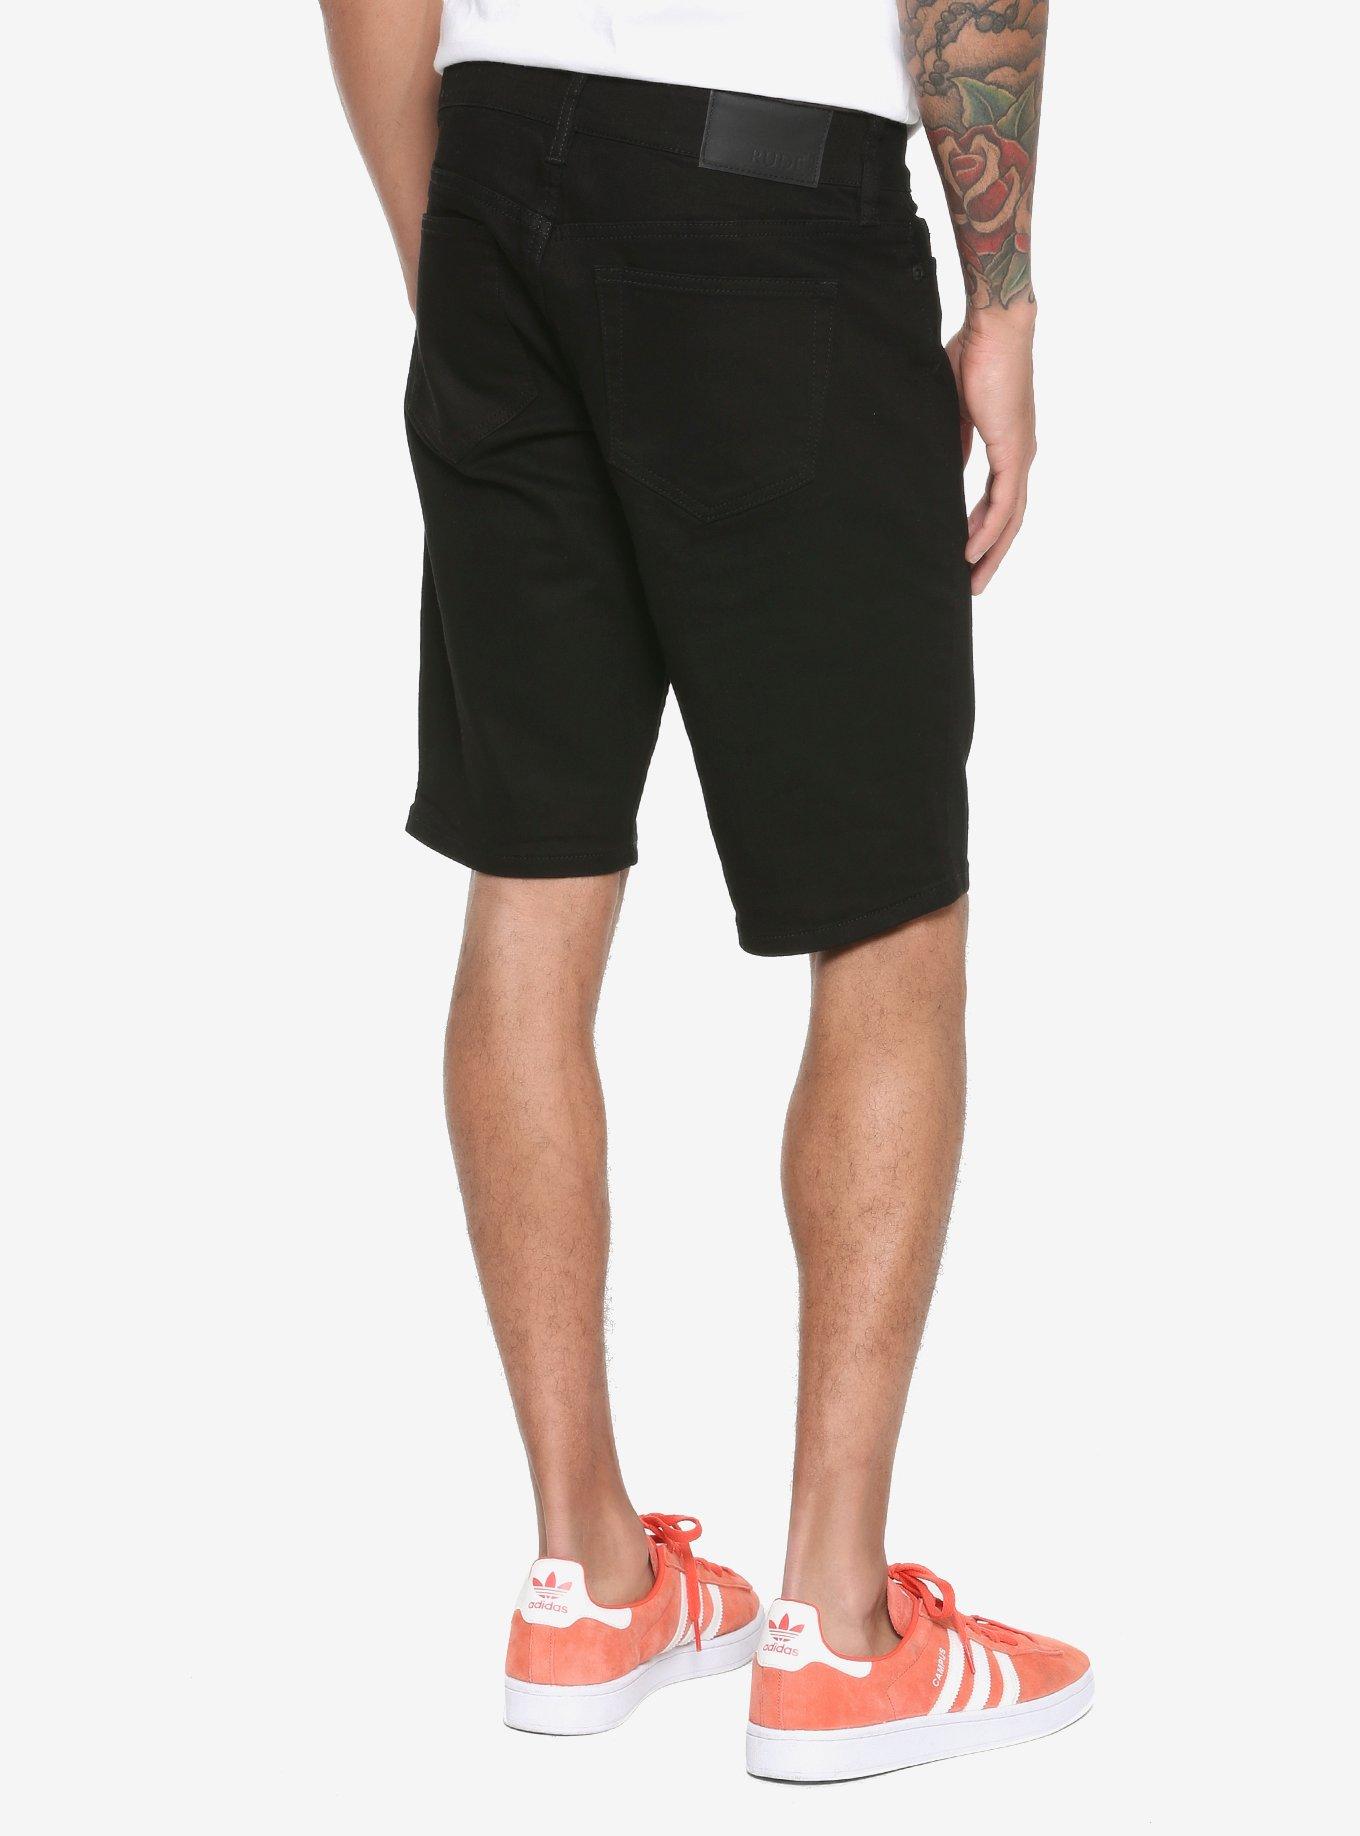 Black Skinny Shorts, , alternate